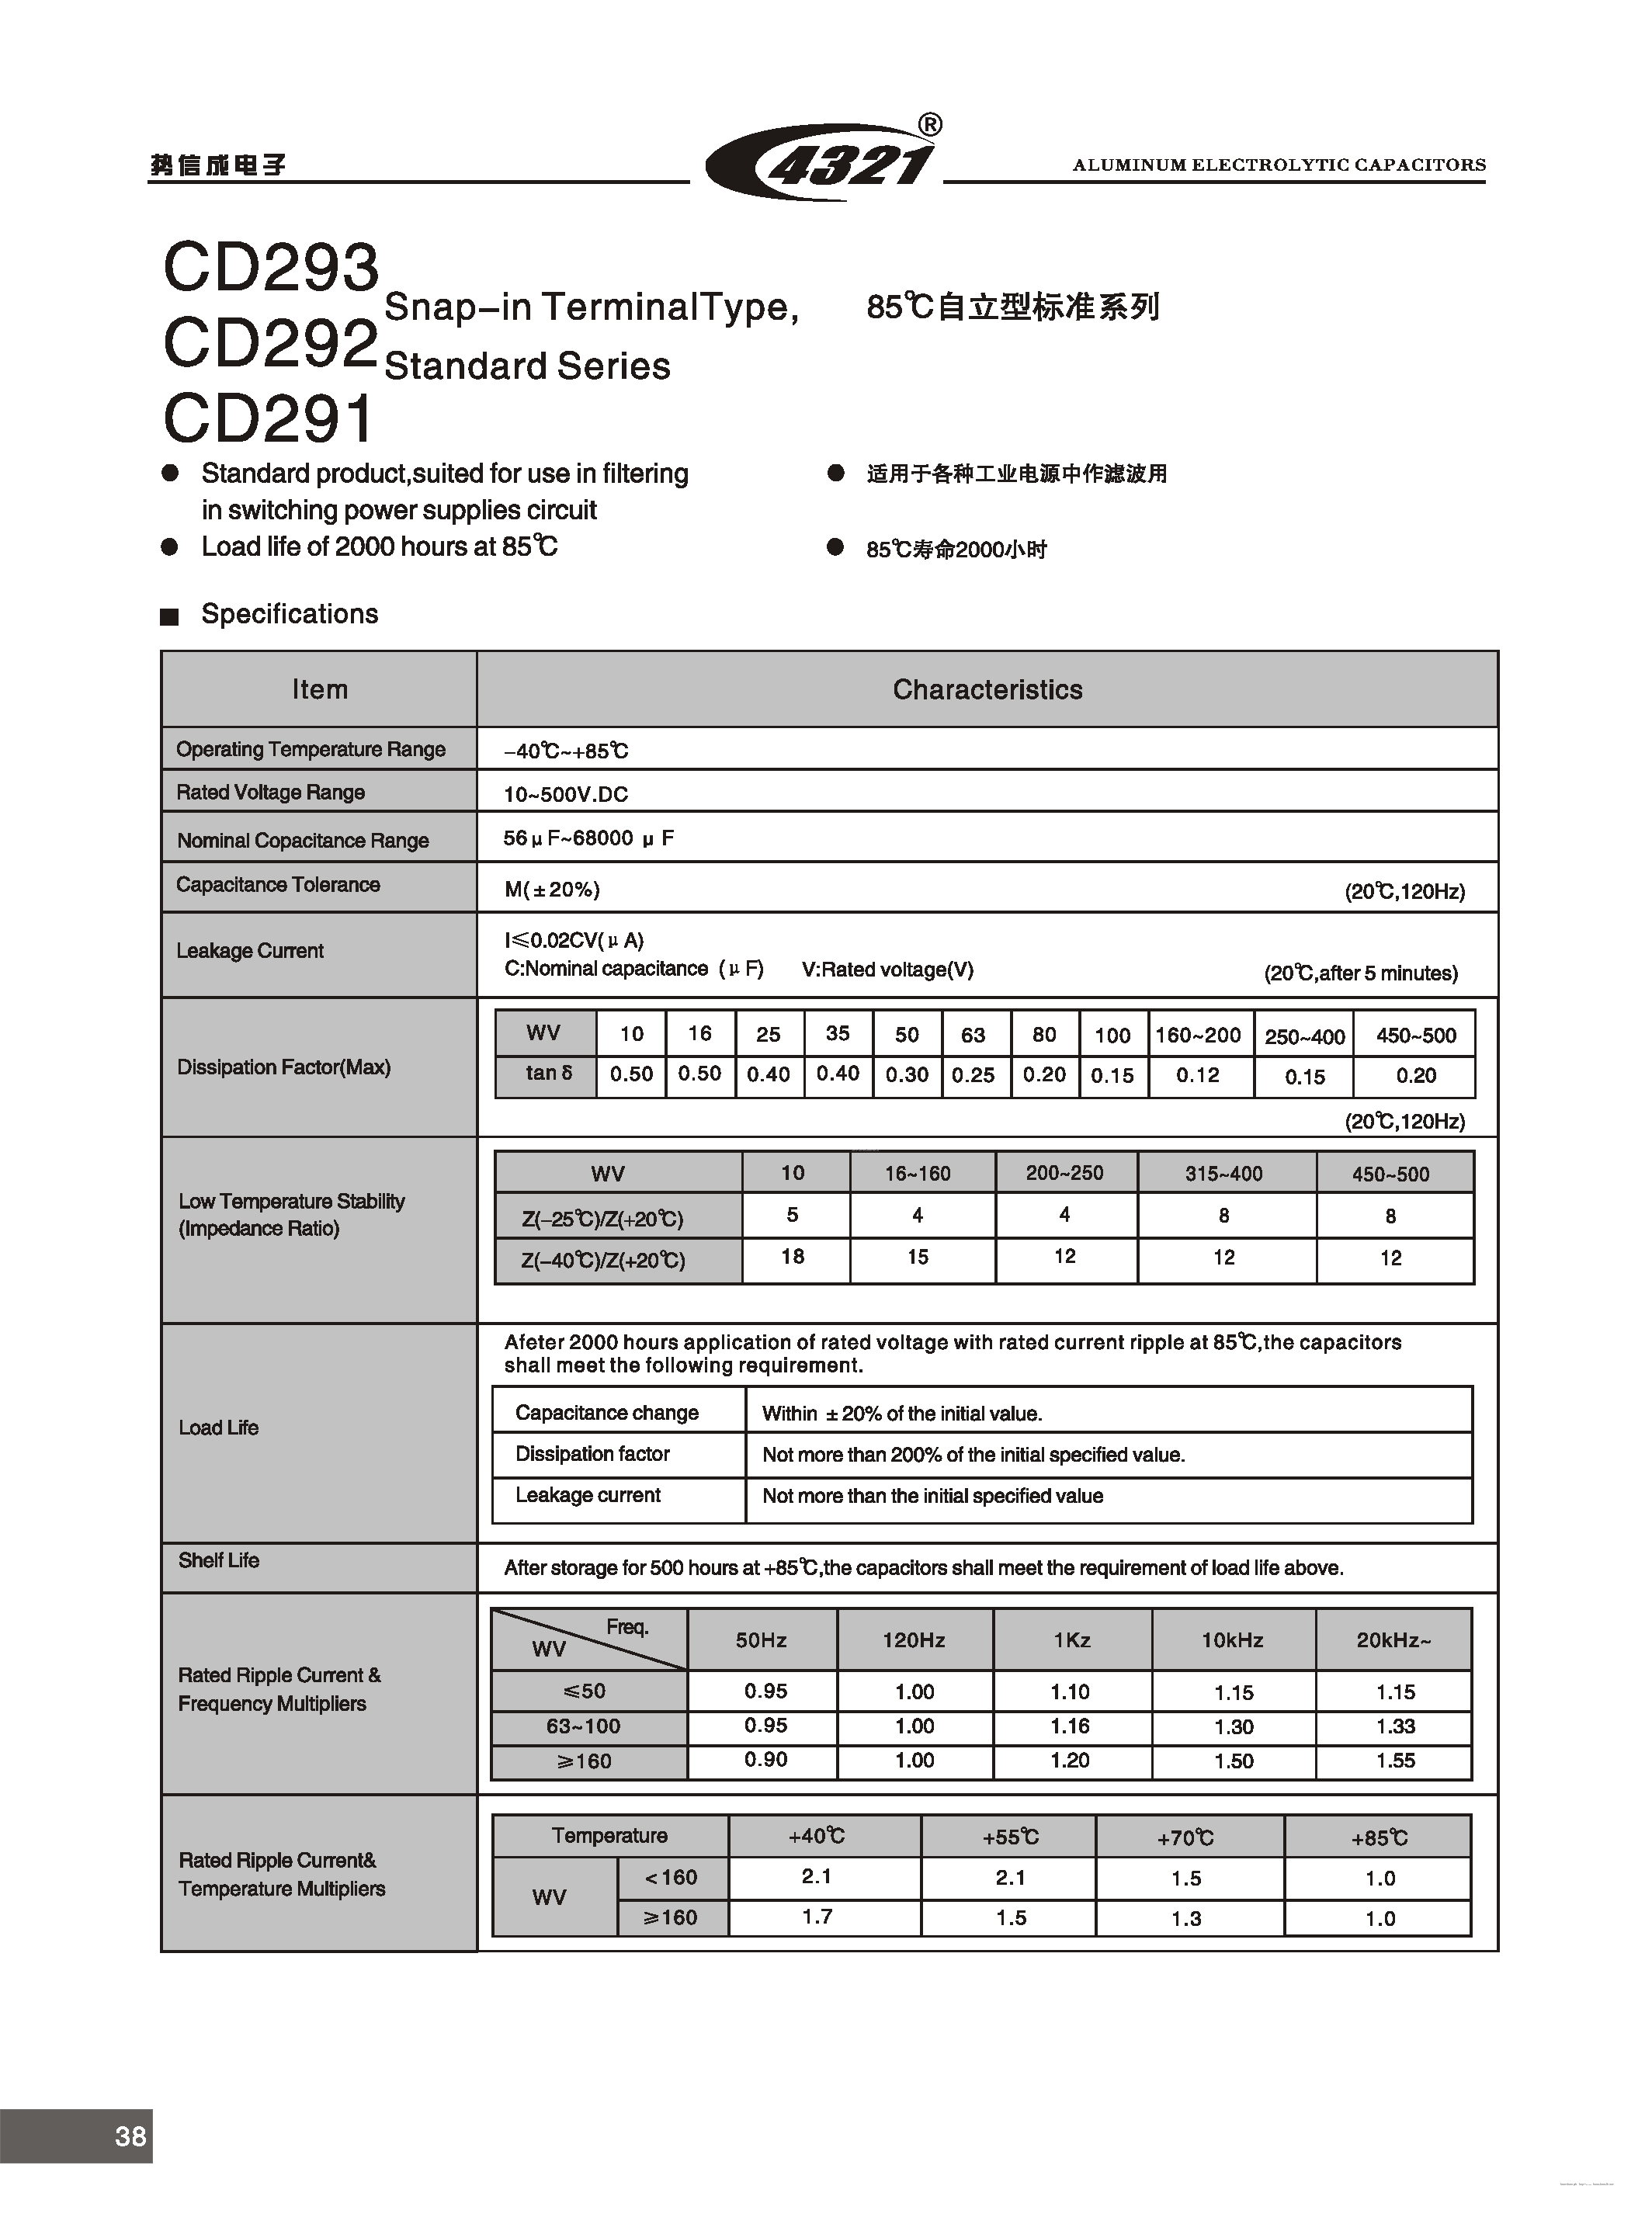 Даташит CD291 - (CD291 - CD293) ALUMINUM ELECTROLYTIC CAPACITOR страница 1